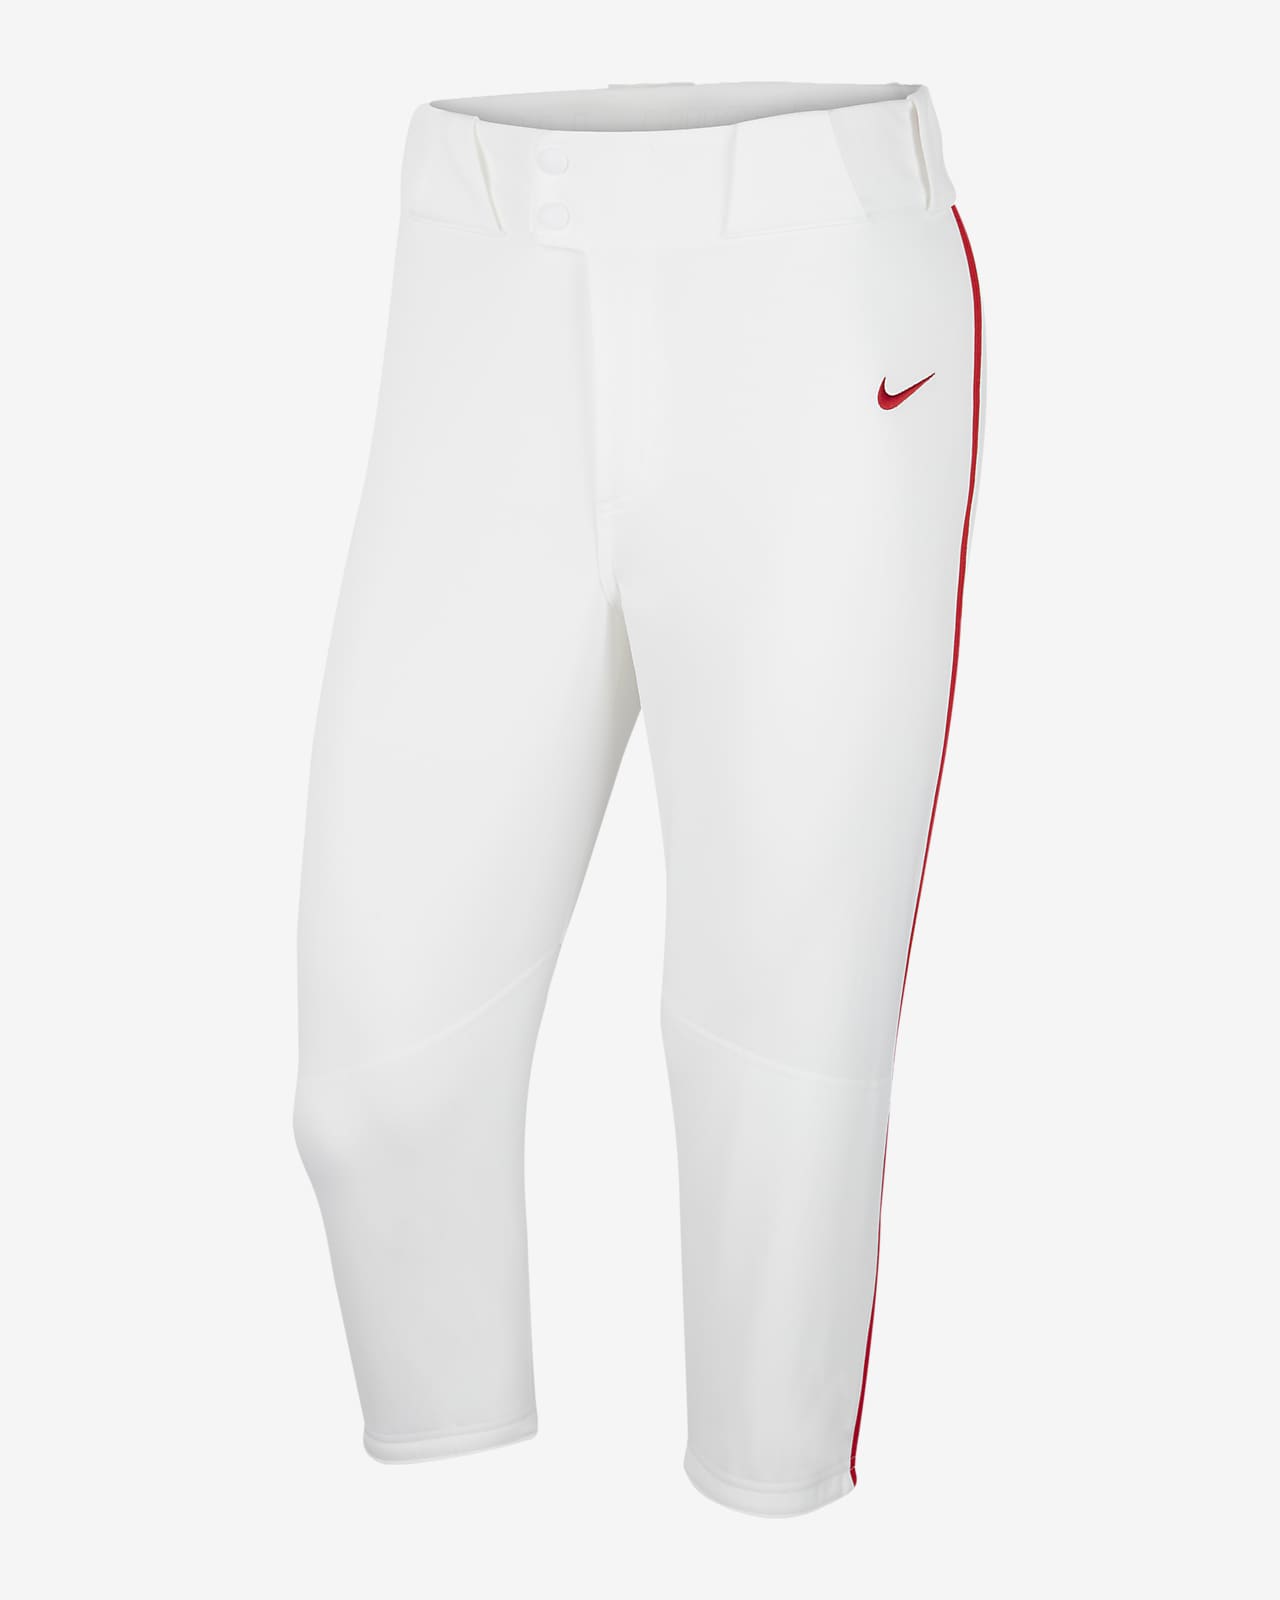 Nike Men's Vapor Select Baseball Pants